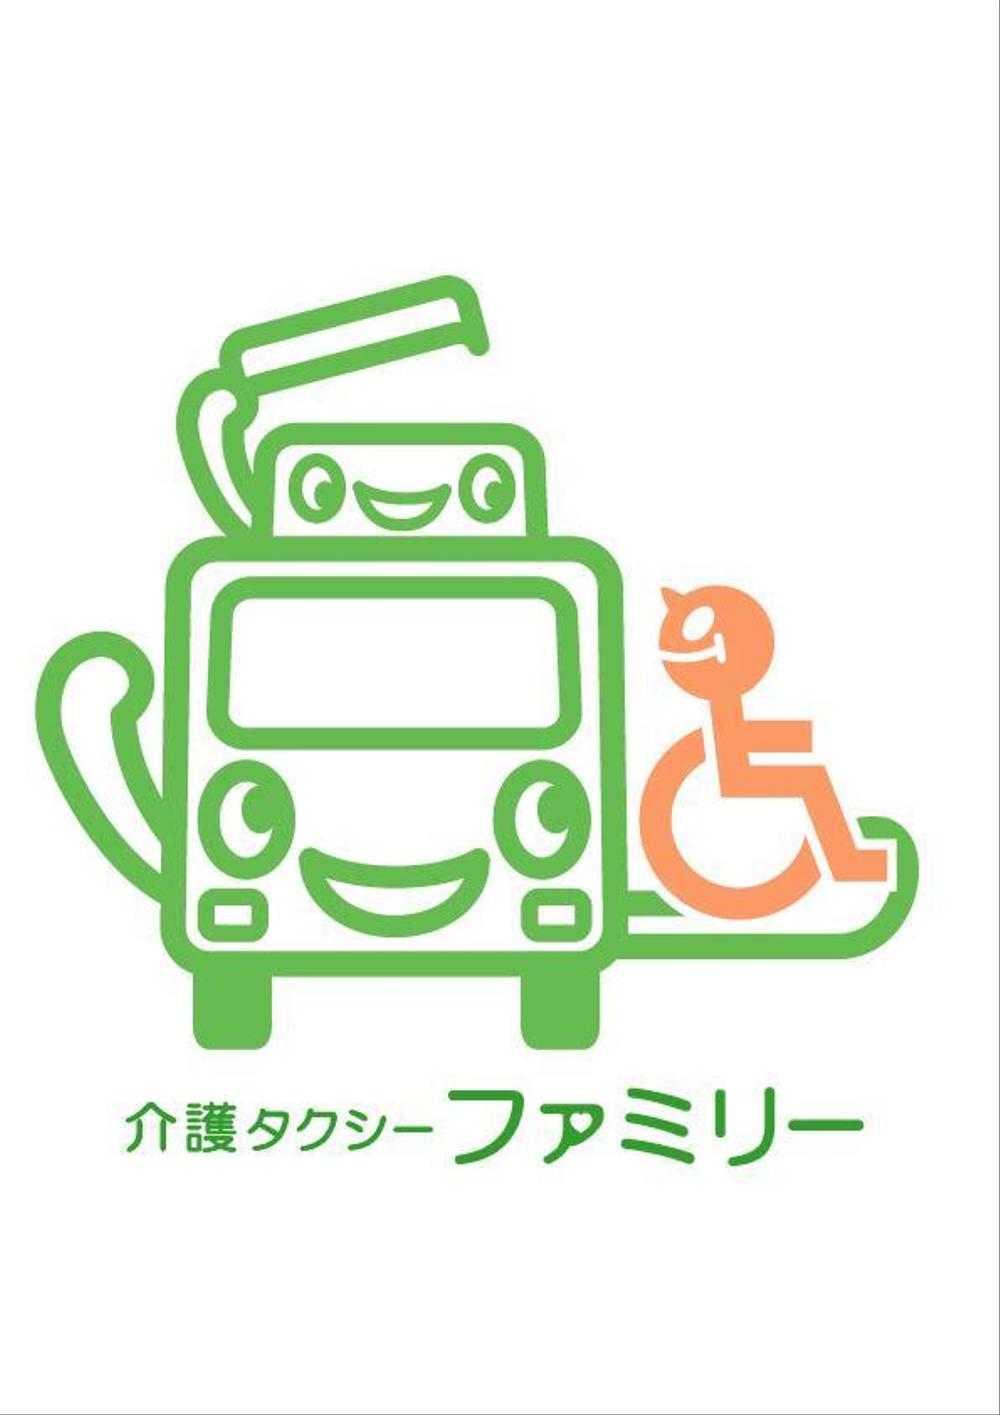 介護タクシーファミリーのロゴ